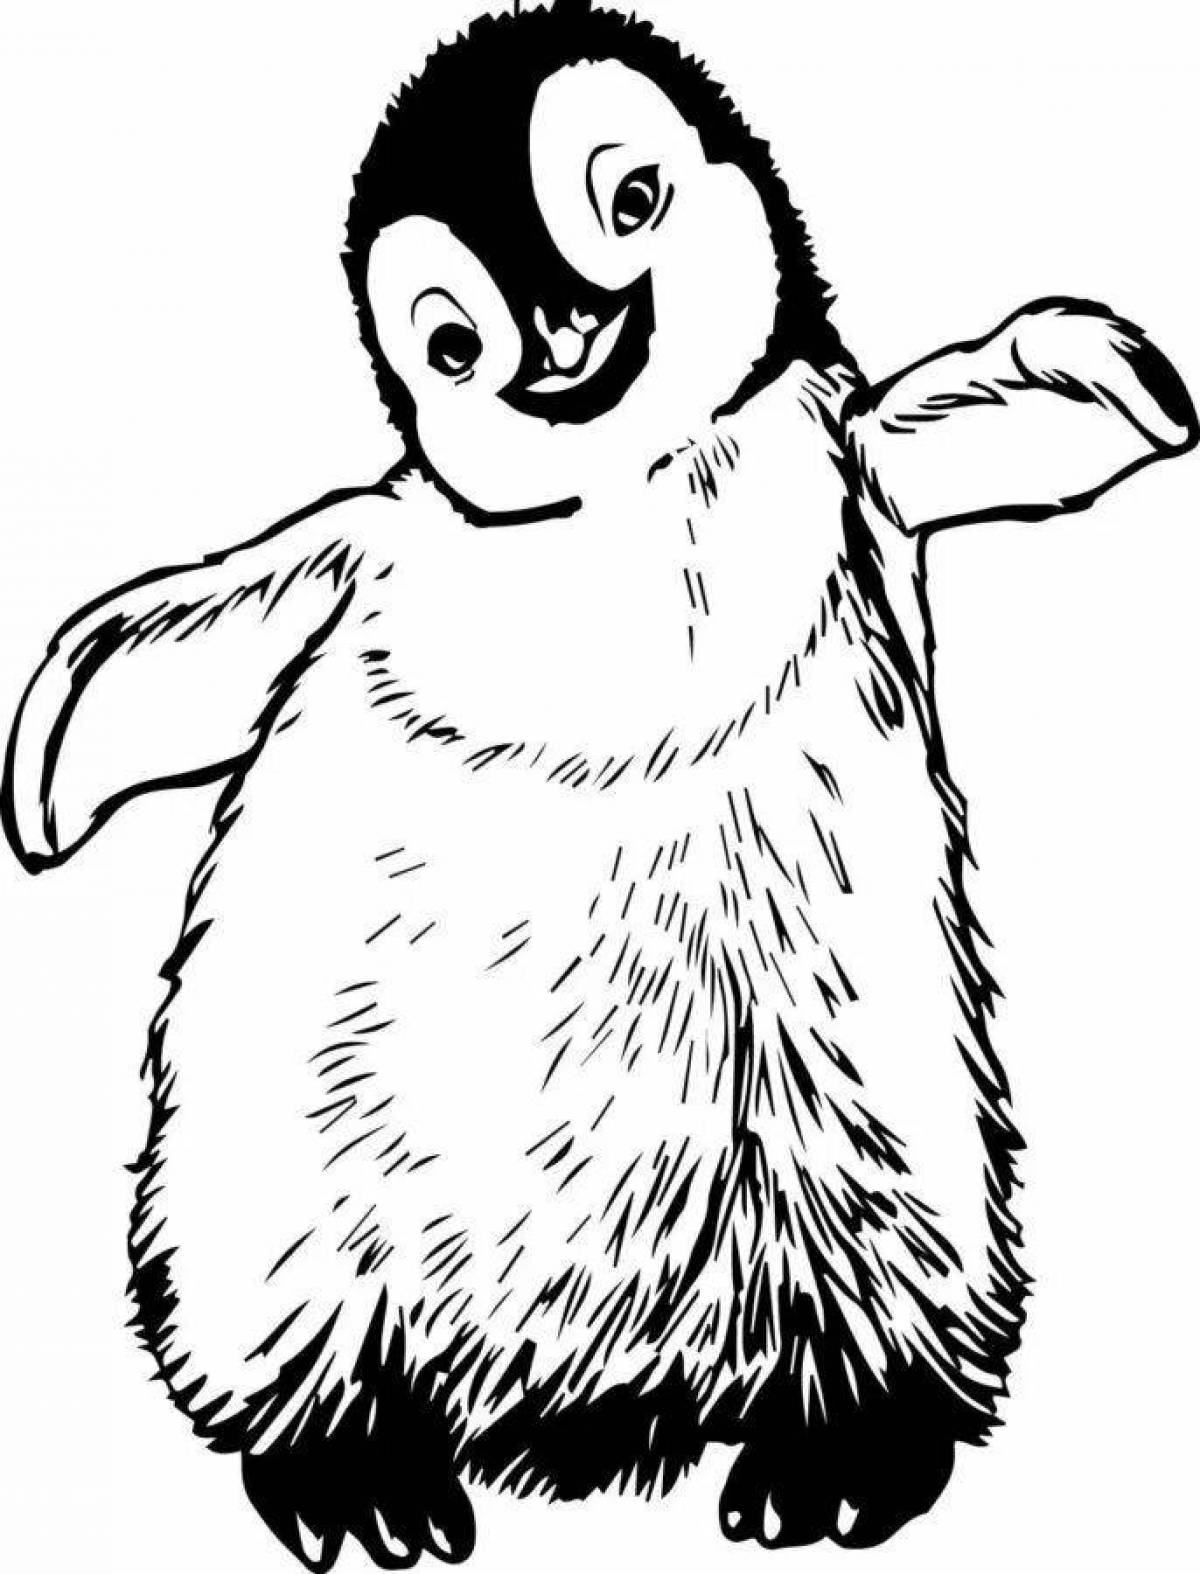 Заманчивый рисунок пингвина